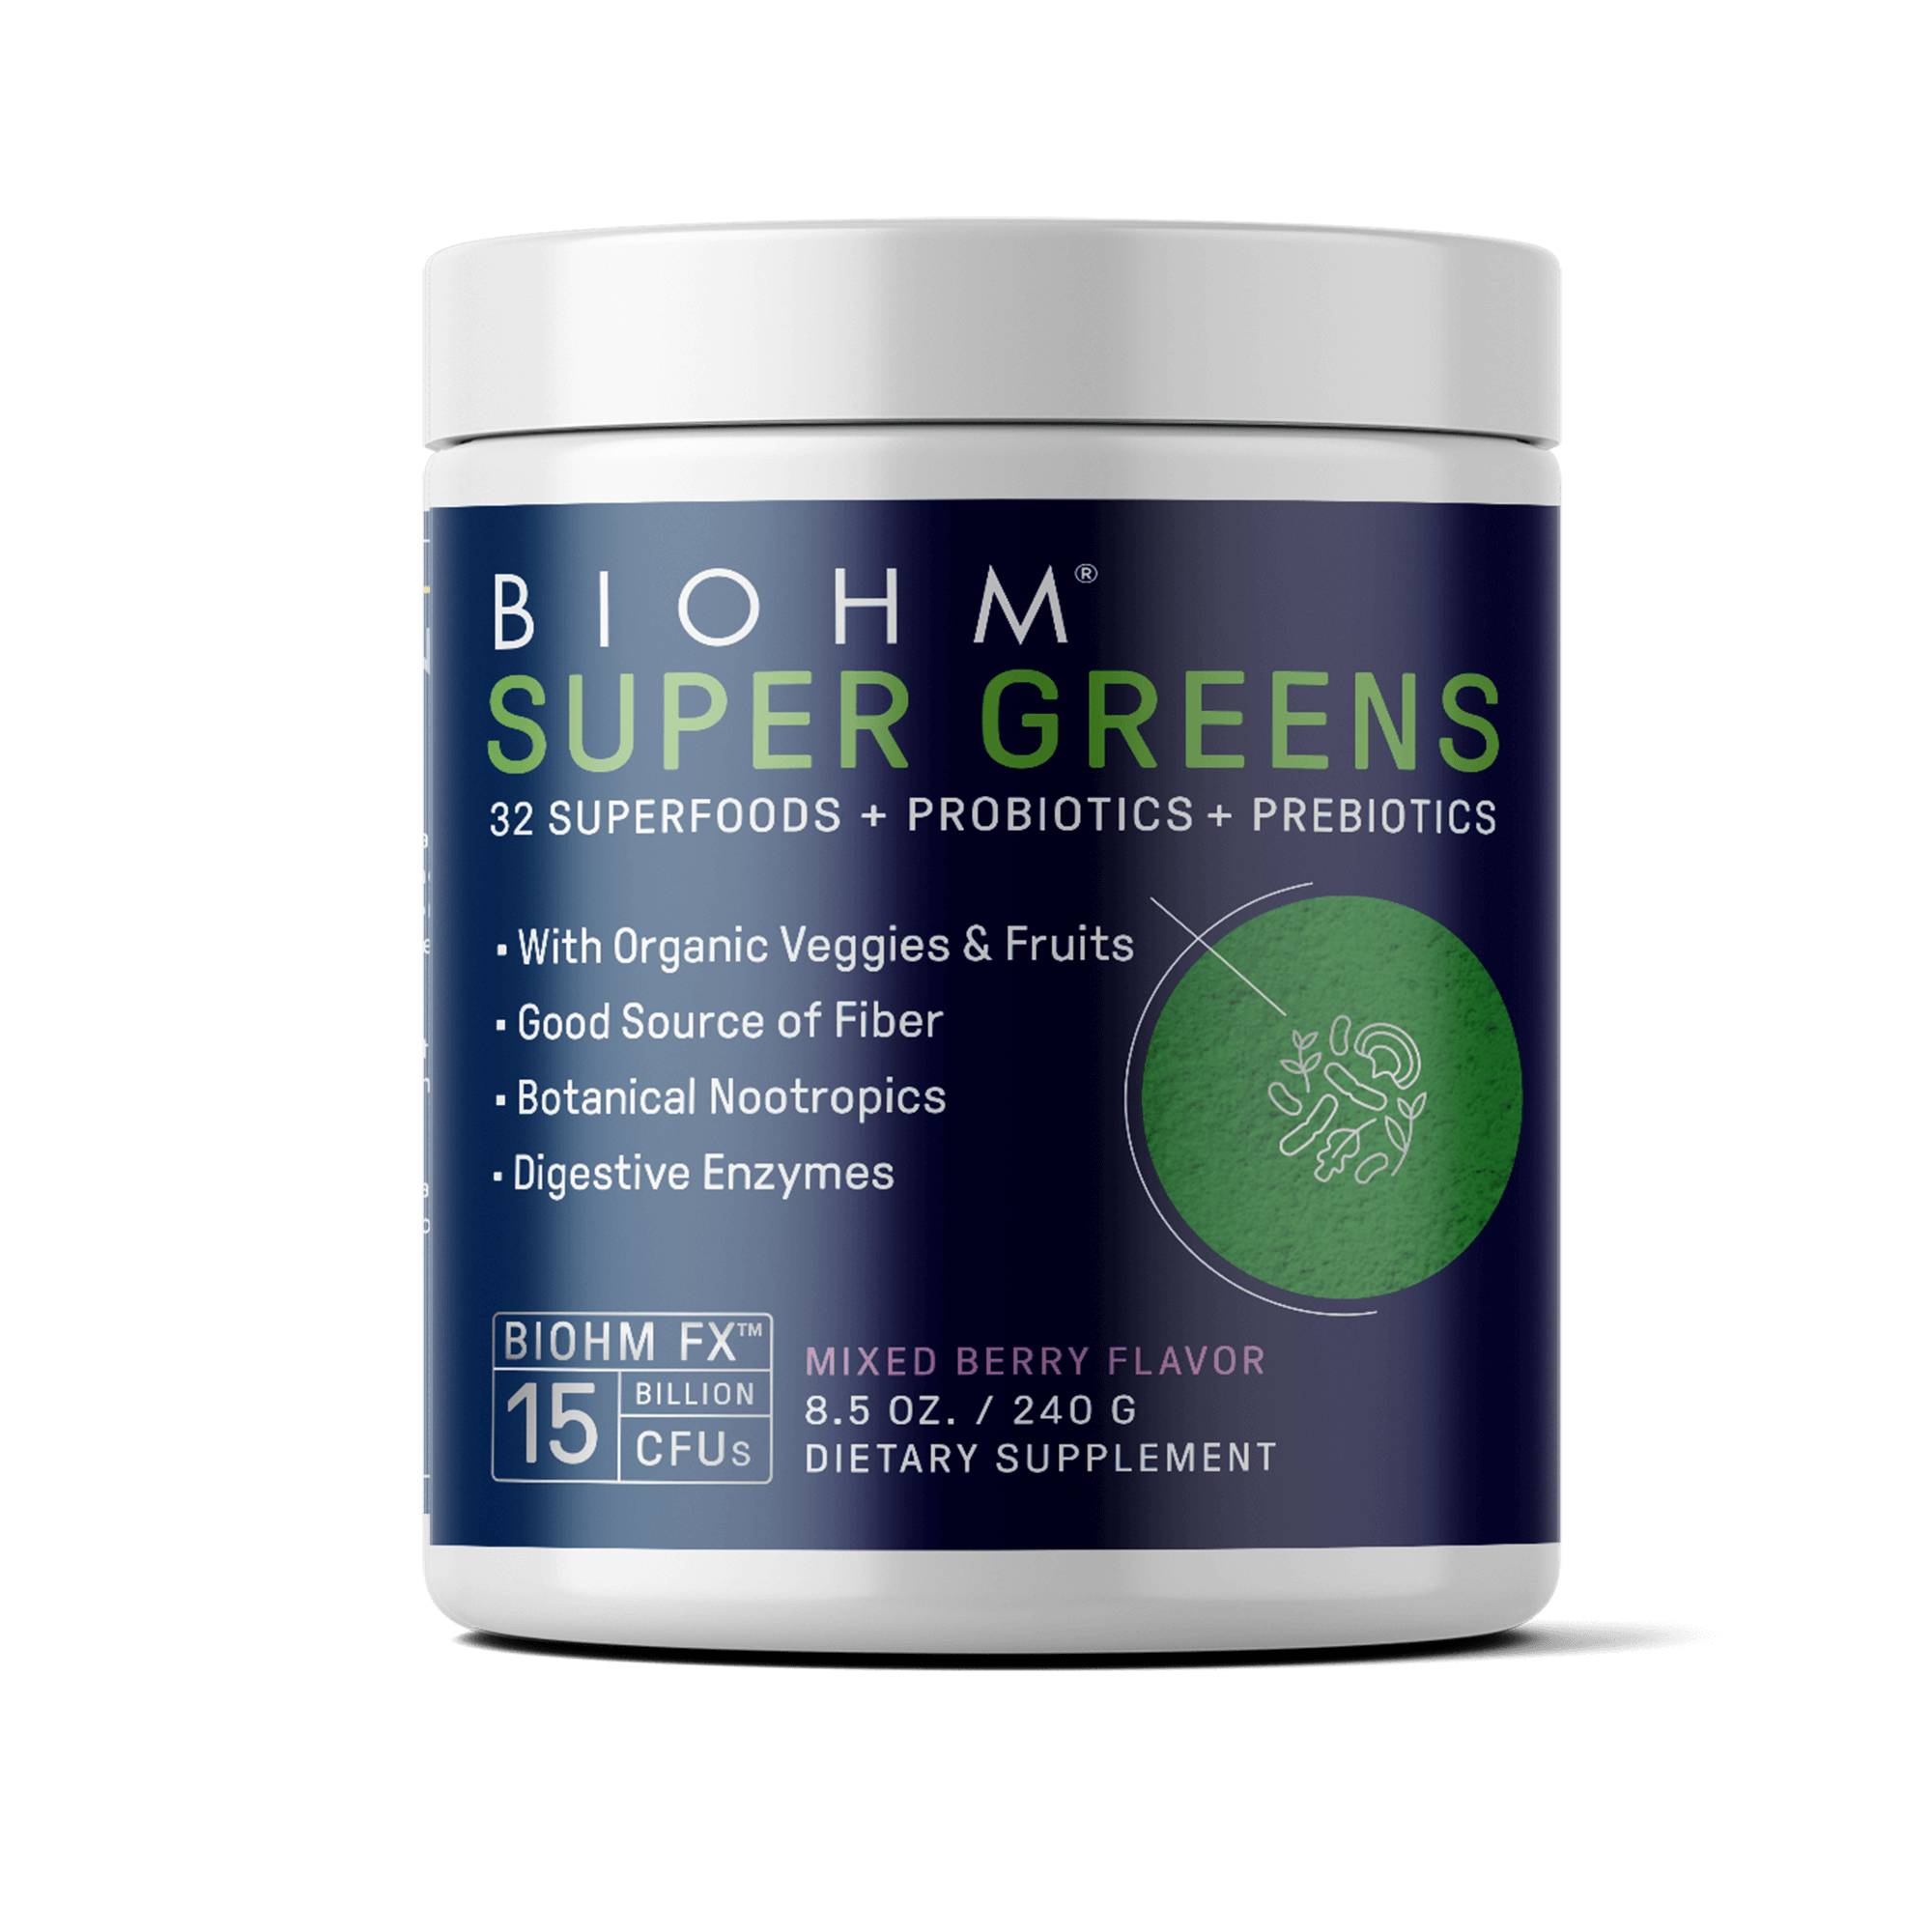 super greens with probiotics